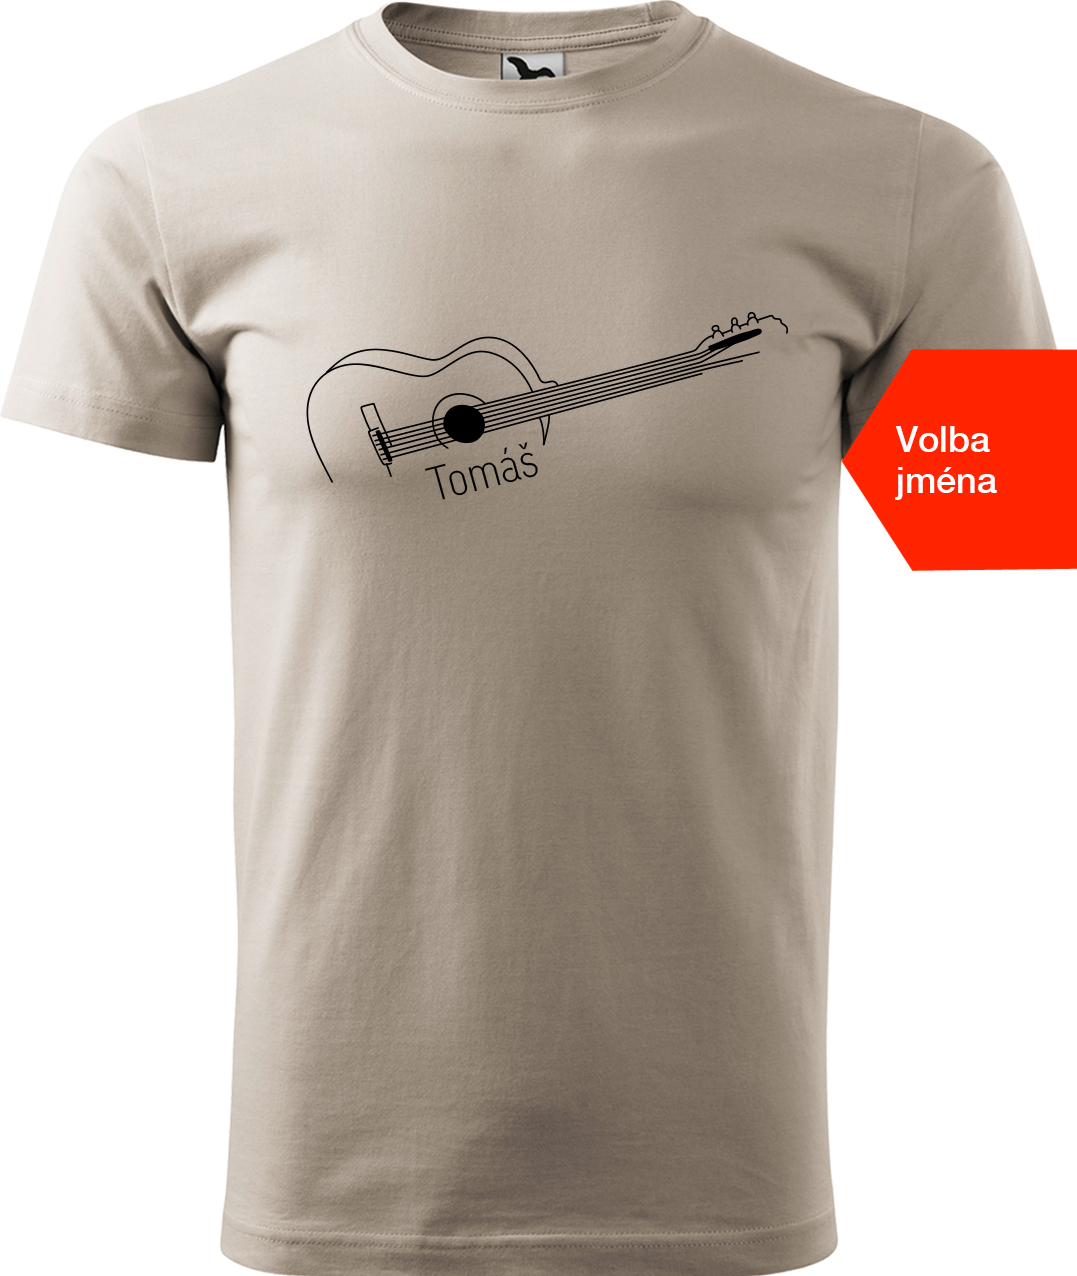 Pánské tričko s kytarou se jménem - Stylizovaná kytara Velikost: S, Barva: Ledově šedá (51), Střih: pánský